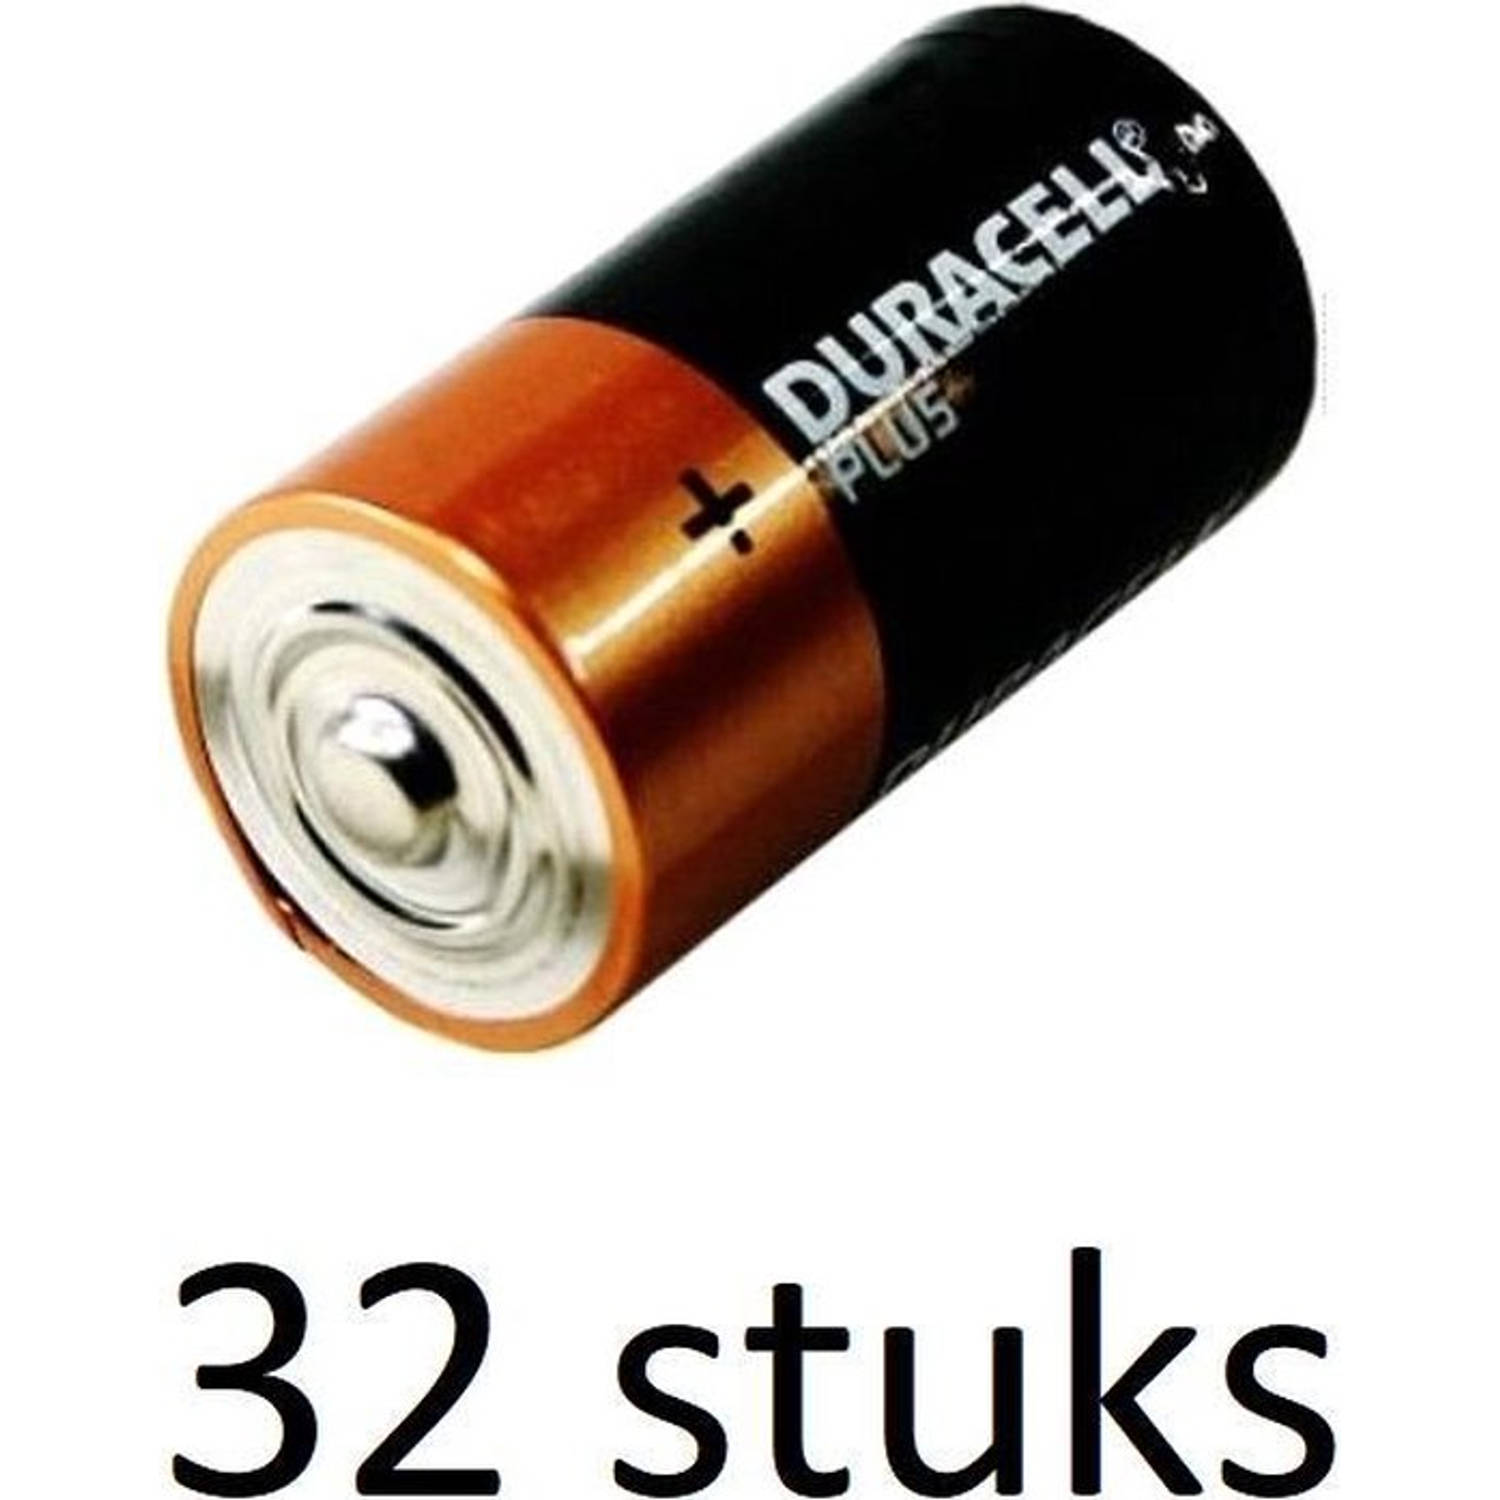 Duracell Plus alkaline C-batterijen - 32 stuks